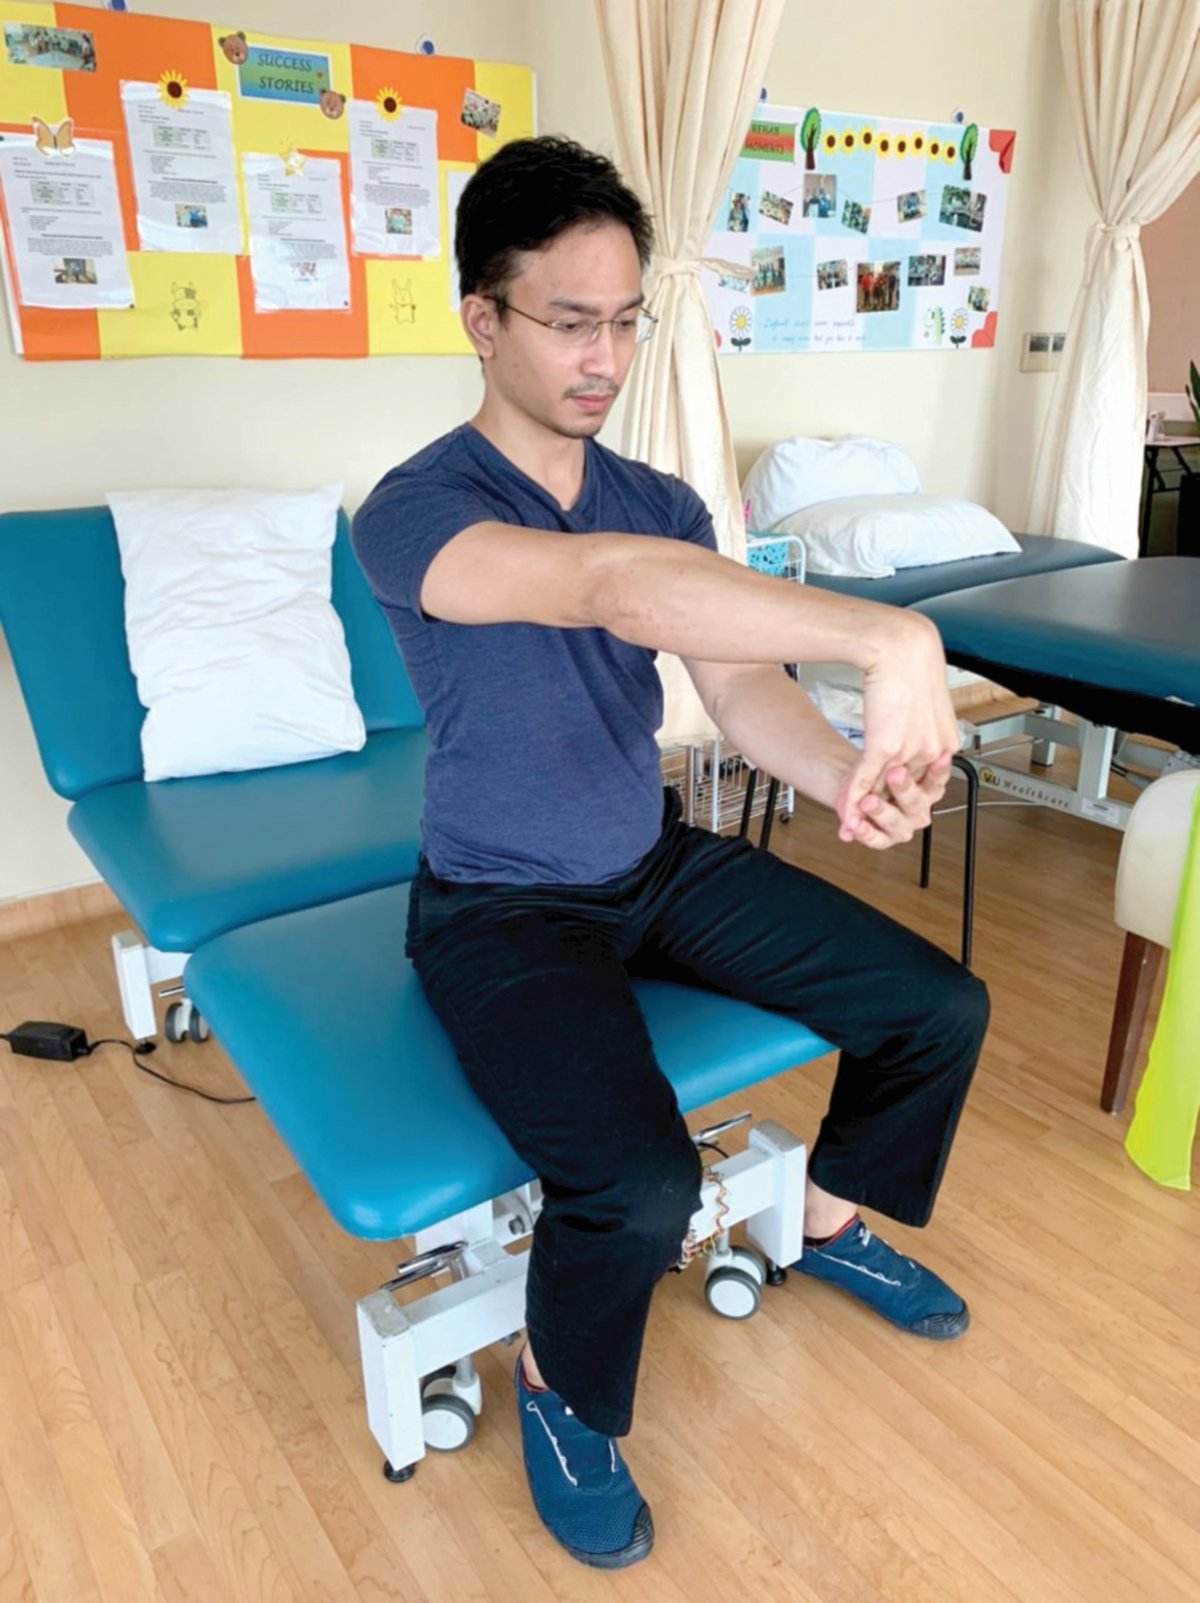 TEKNIK latihan fleksibiliti 'wrist extensors stretch' bagi meningkatkan fleksibiliti otot, tendon dan ligamen di kawasan sendi lengan.